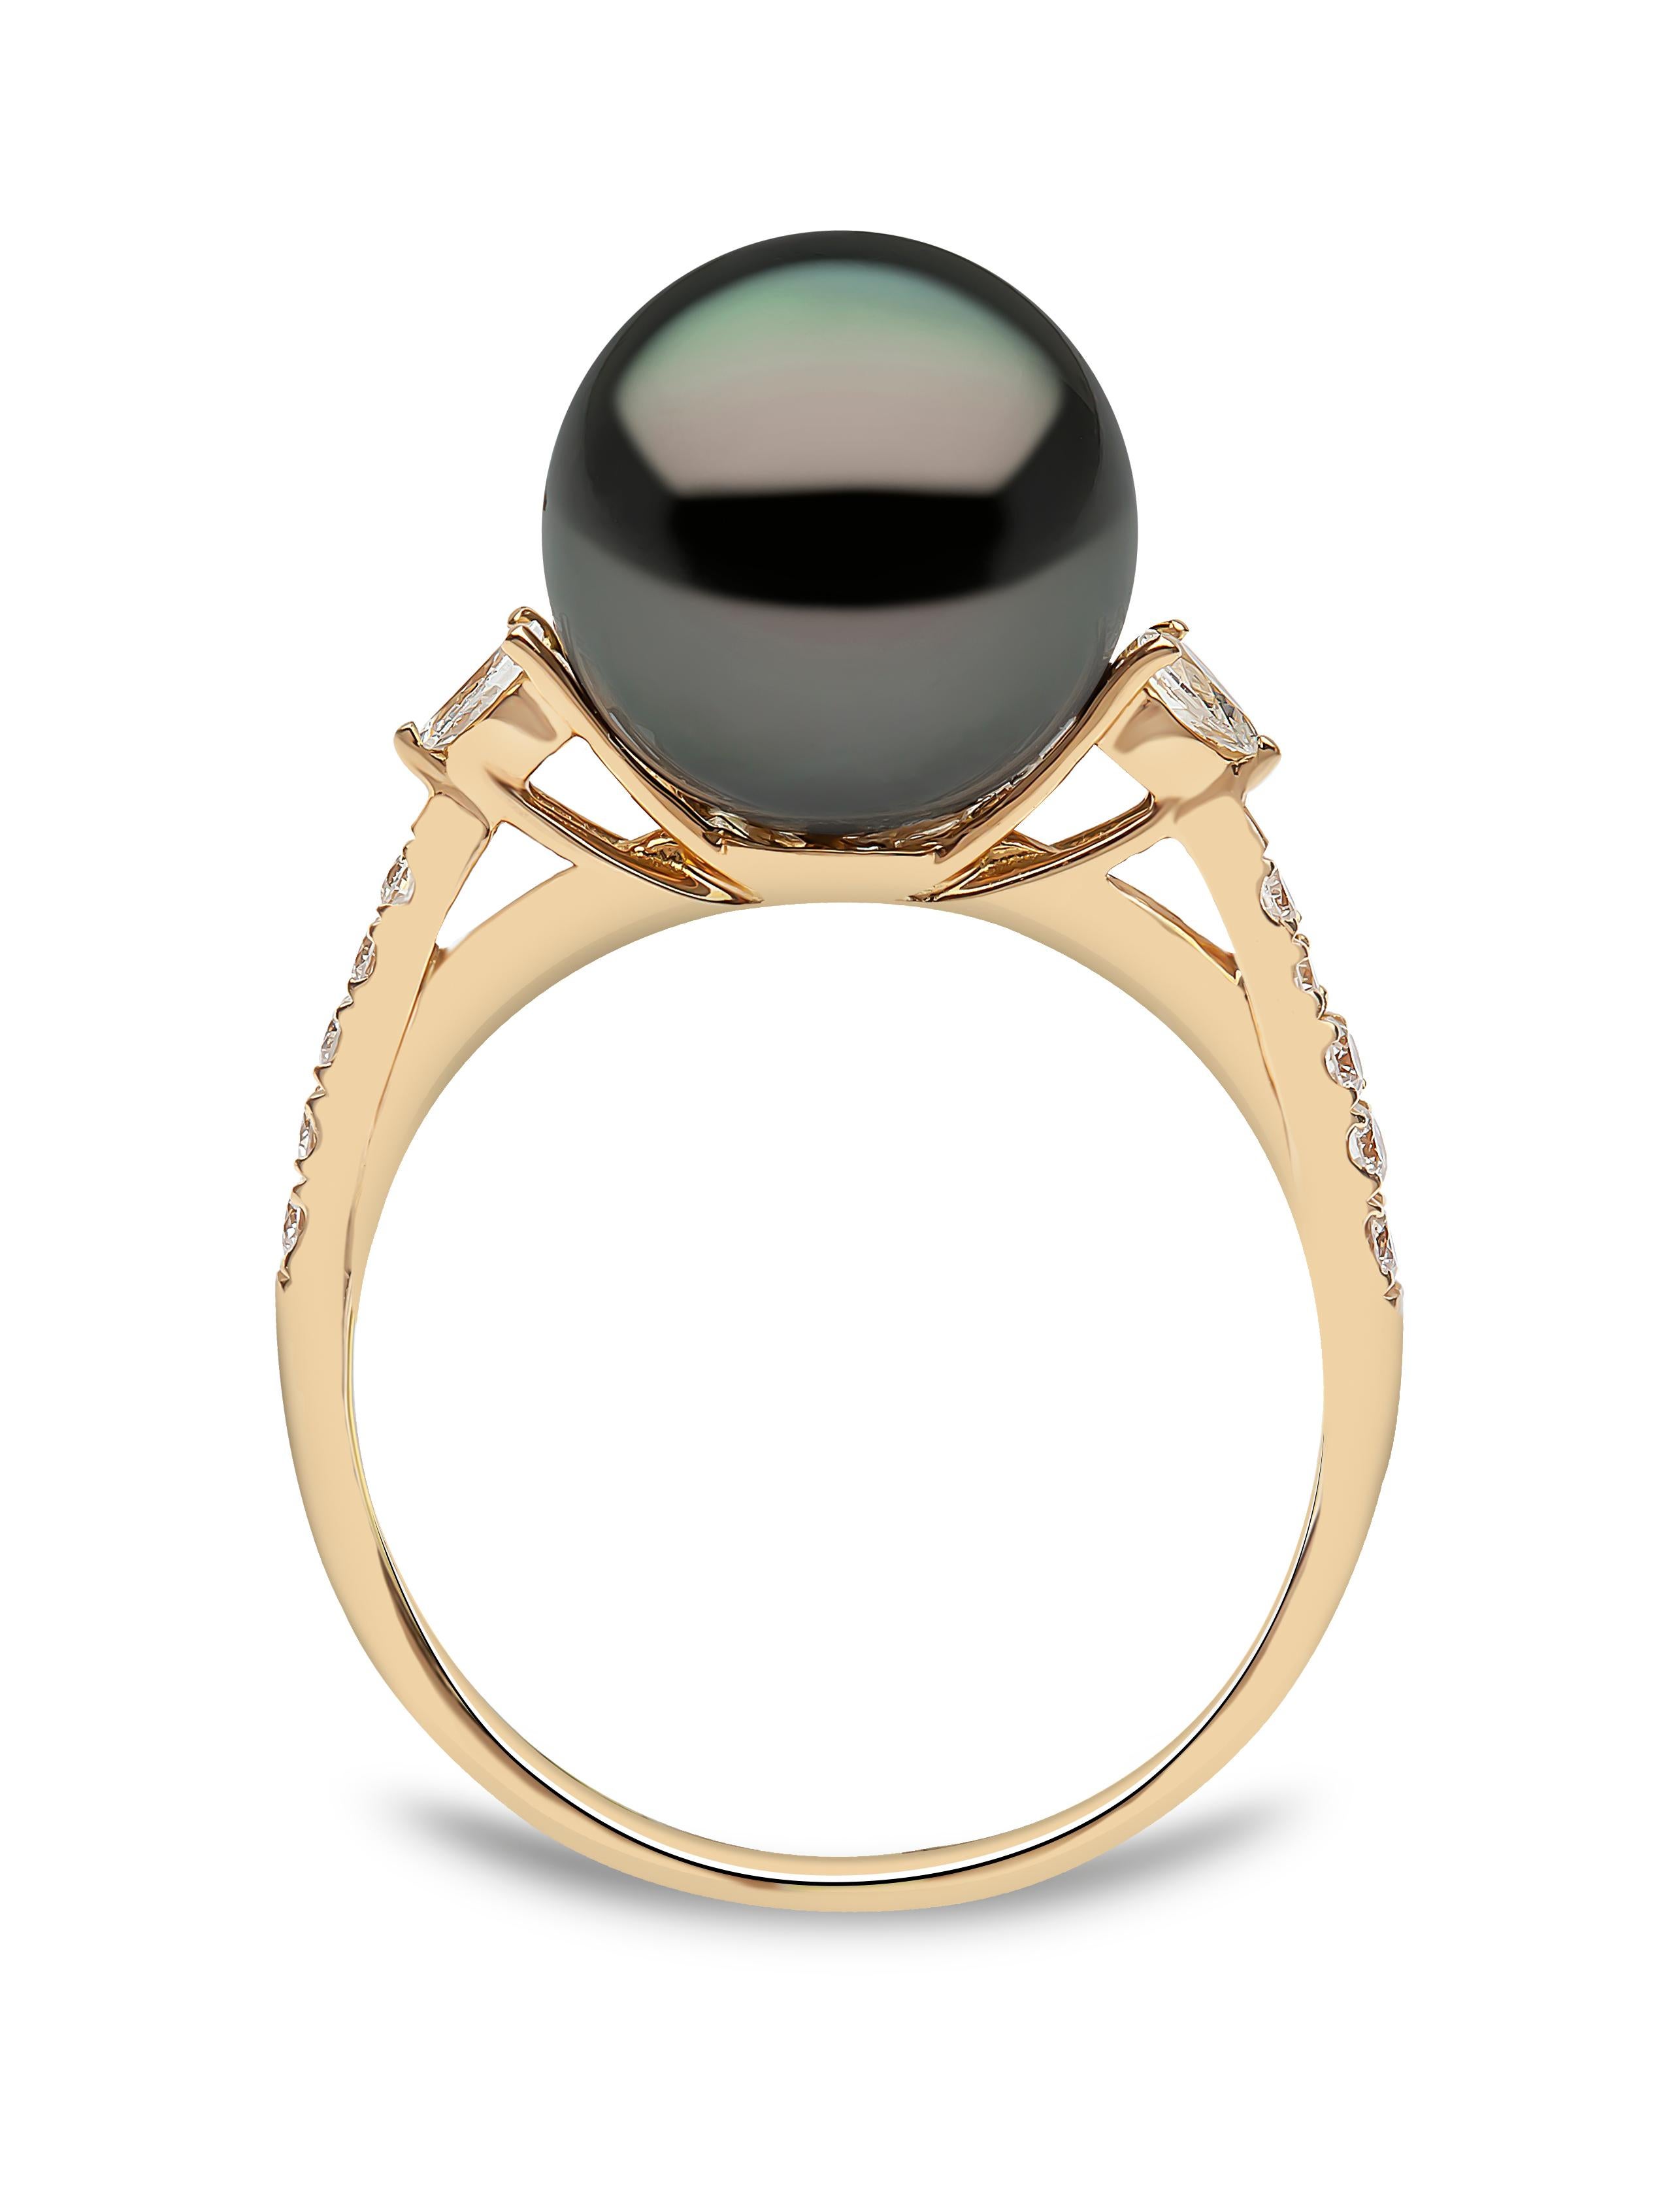 Bei diesem zarten Ring von Yoko London steht eine schimmernde Tahiti-Perle im Mittelpunkt des Designs. Die spektakulären Farbtöne der Perle werden durch die Fassung aus 18 Karat Gelbgold und die eleganten Diamantschultern perfekt zur Geltung